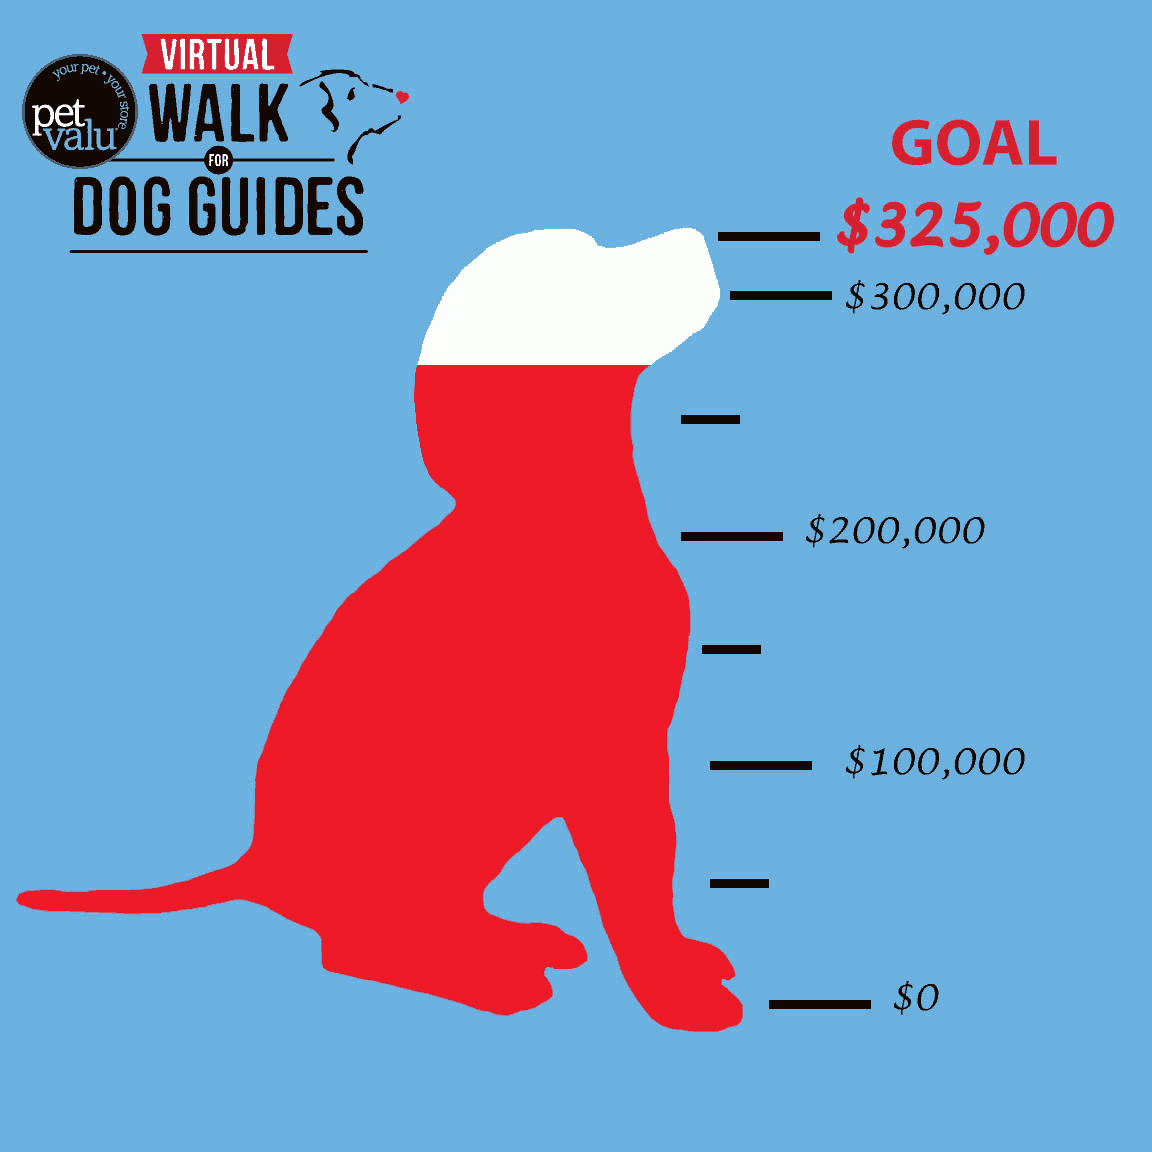 Dog Guide Walk Goal